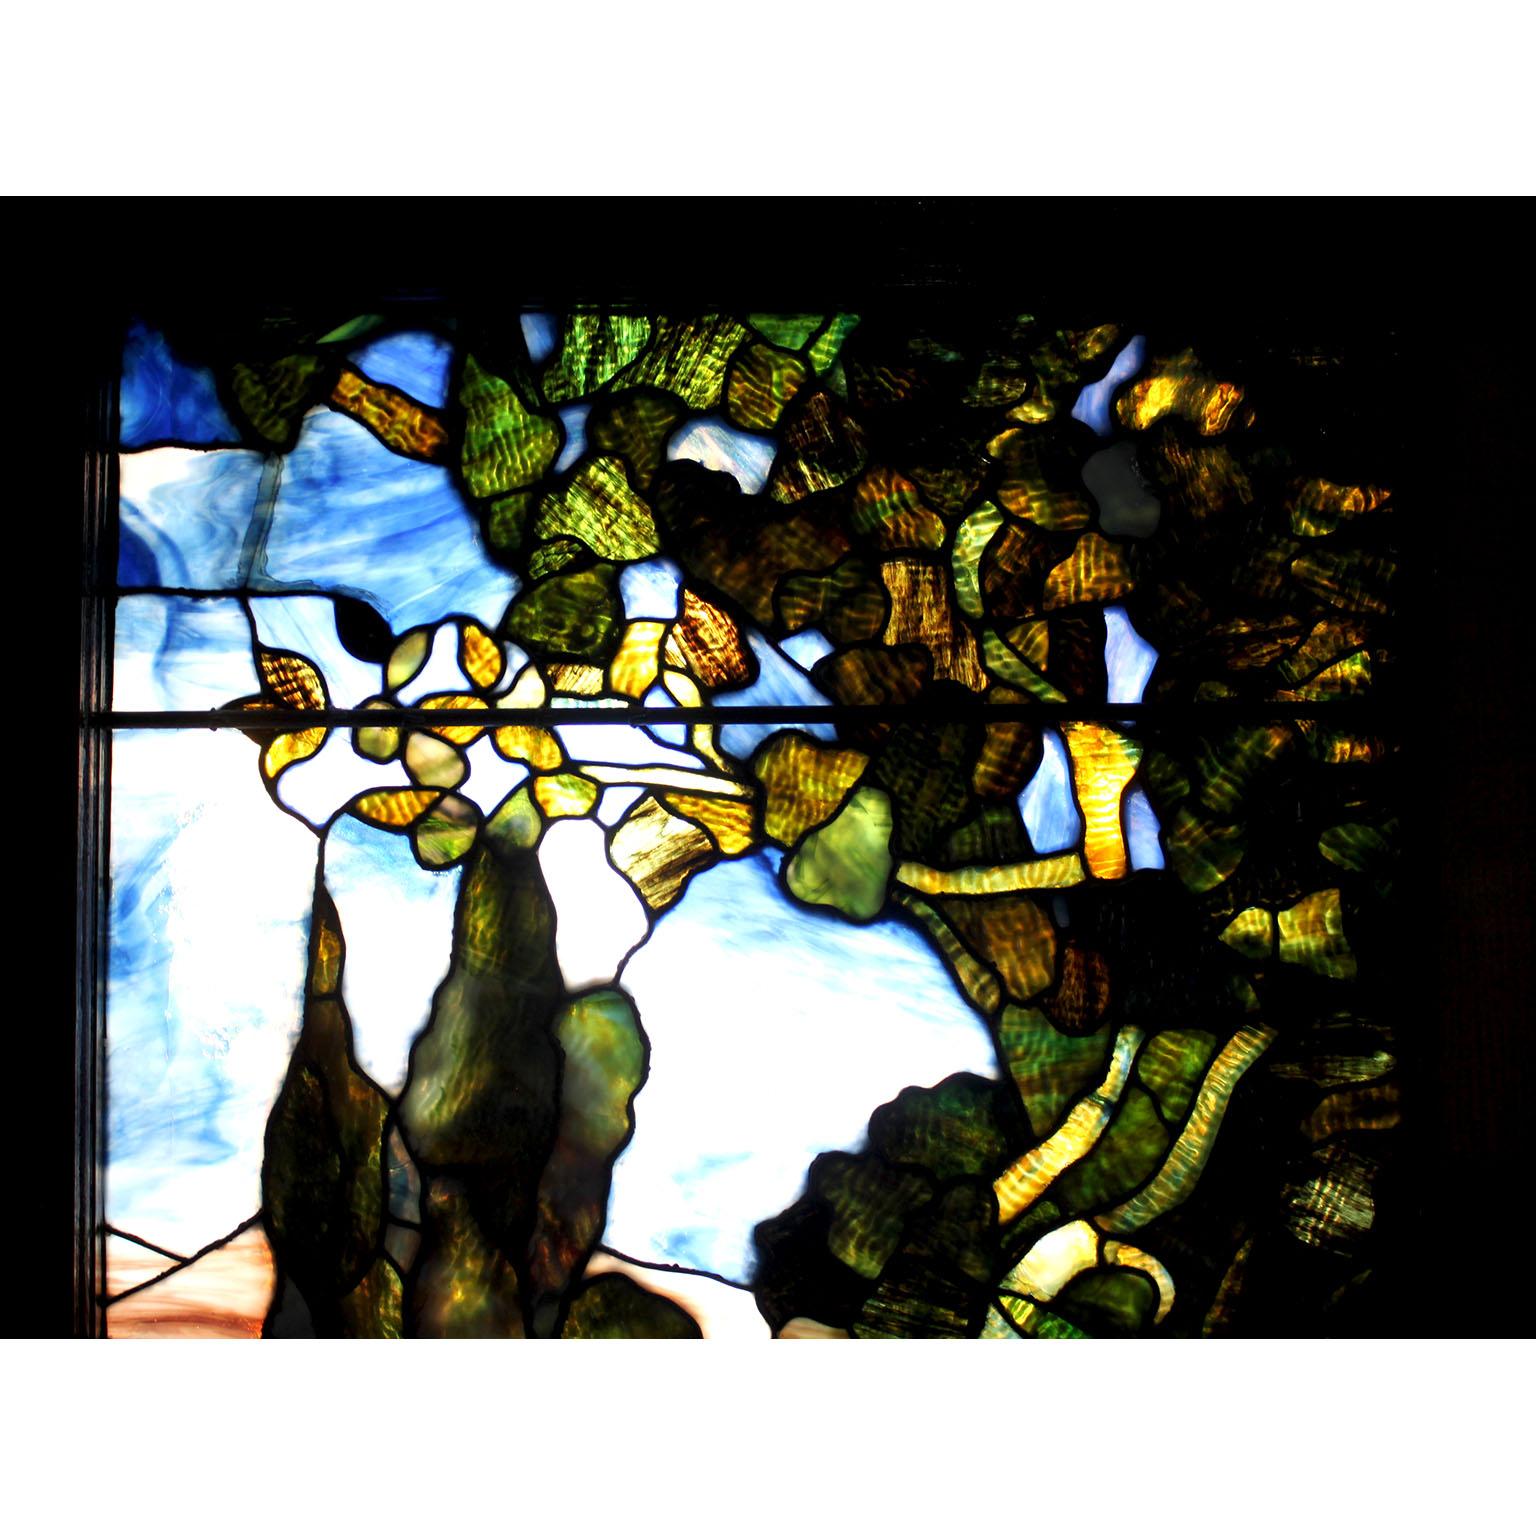 Eine amerikanische Glasmalerei des 19. Jahrhunderts, die Schafe/Lämmer inmitten von Blumen und Sträuchern darstellt, in der Art von Louis Comfort Tiffany - Tiffany Studios, in einem Eichenrahmen. Auf dem Boden steht 